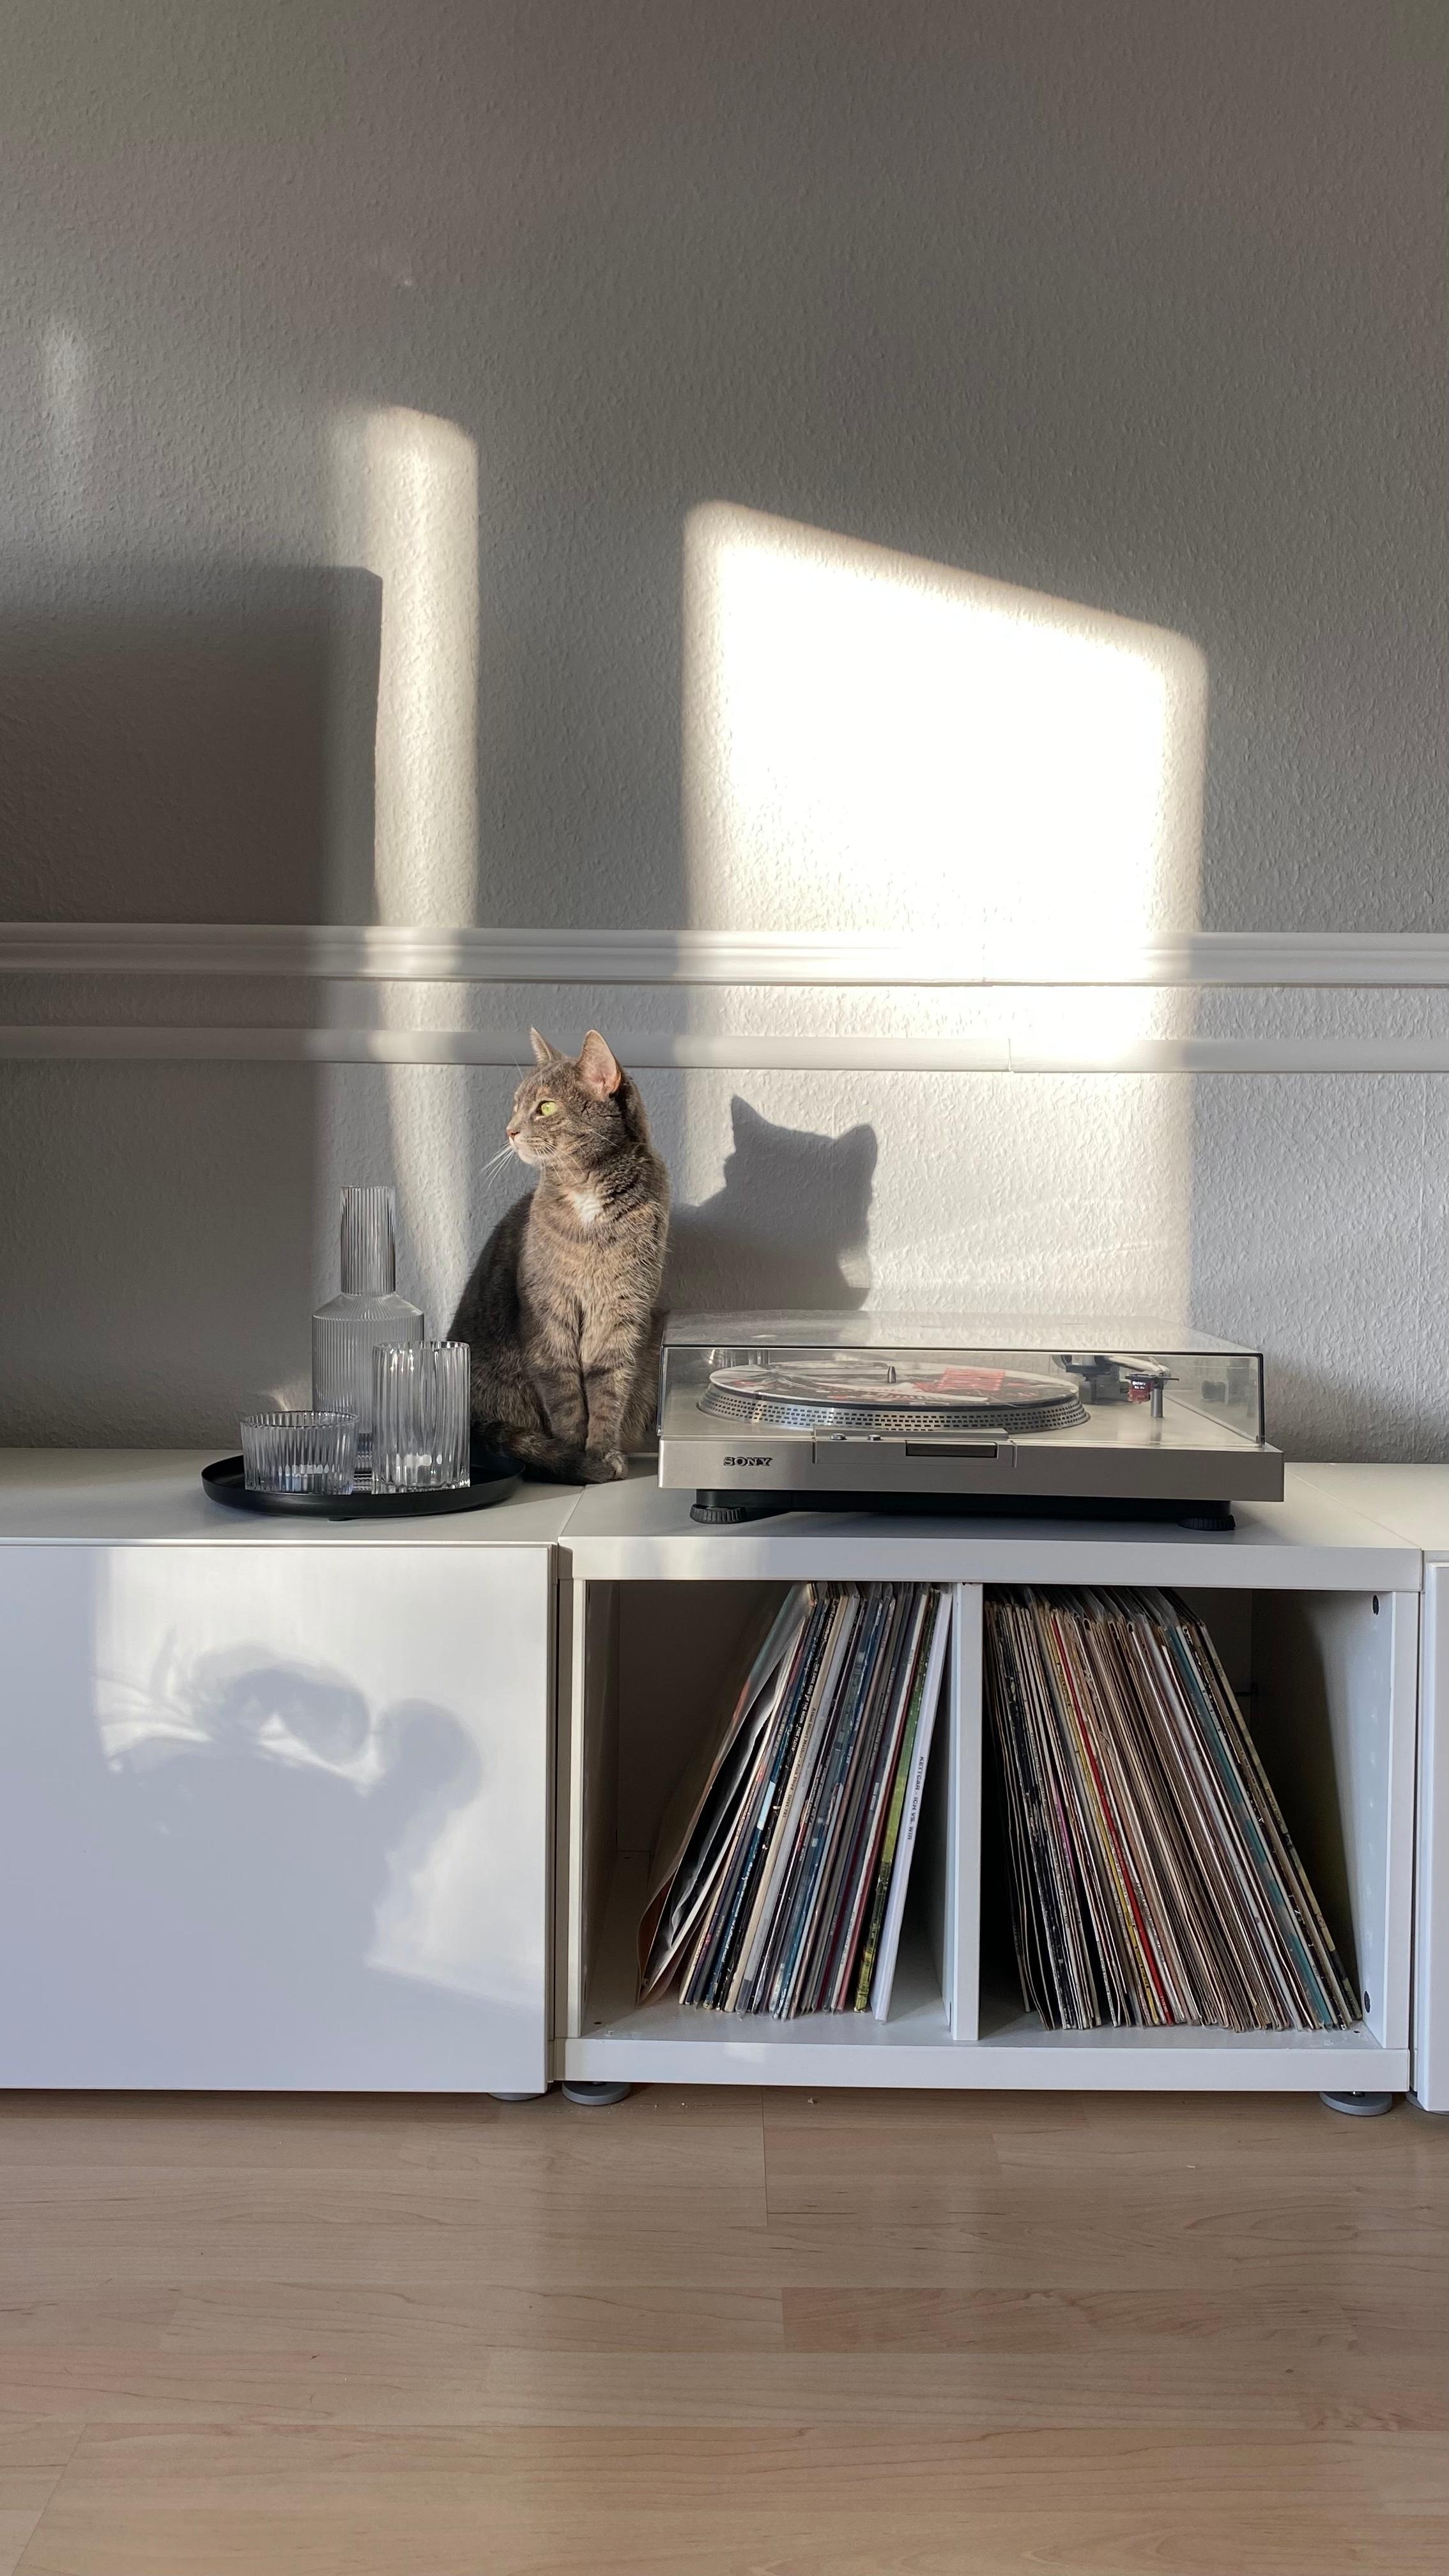 #Musik #Vinyl #Katze #Schallplatten #Plattenspieler #Licht #Sonnenstrahlen #scandi #Wohnzimmer #Haustier #Katze